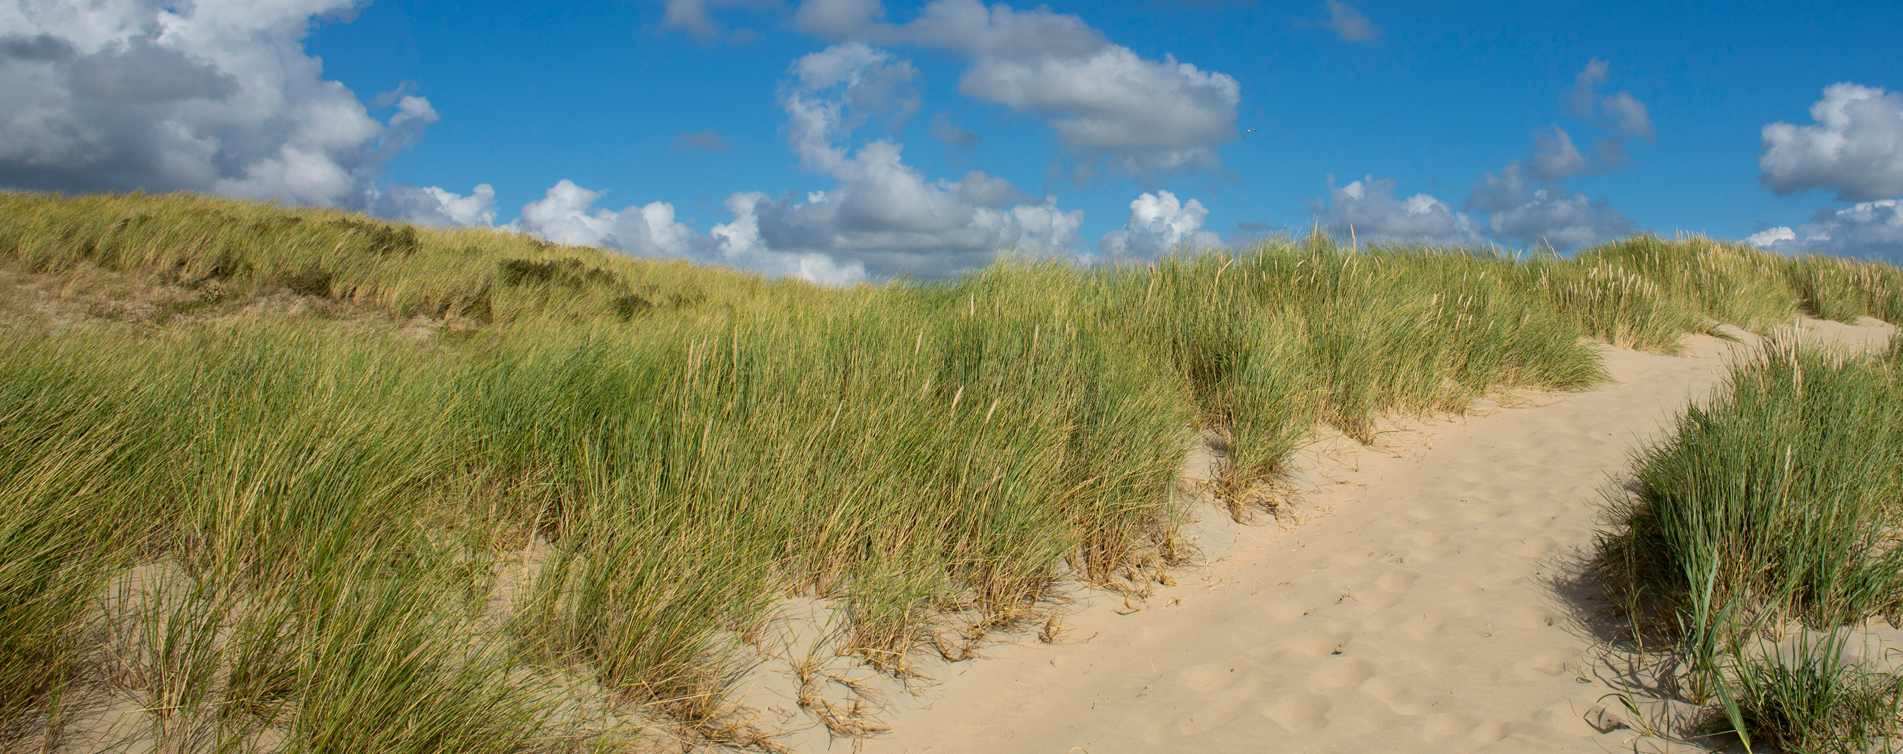 Strand en duinen van Castricum - Weel Verzekeringen & Hypotheken